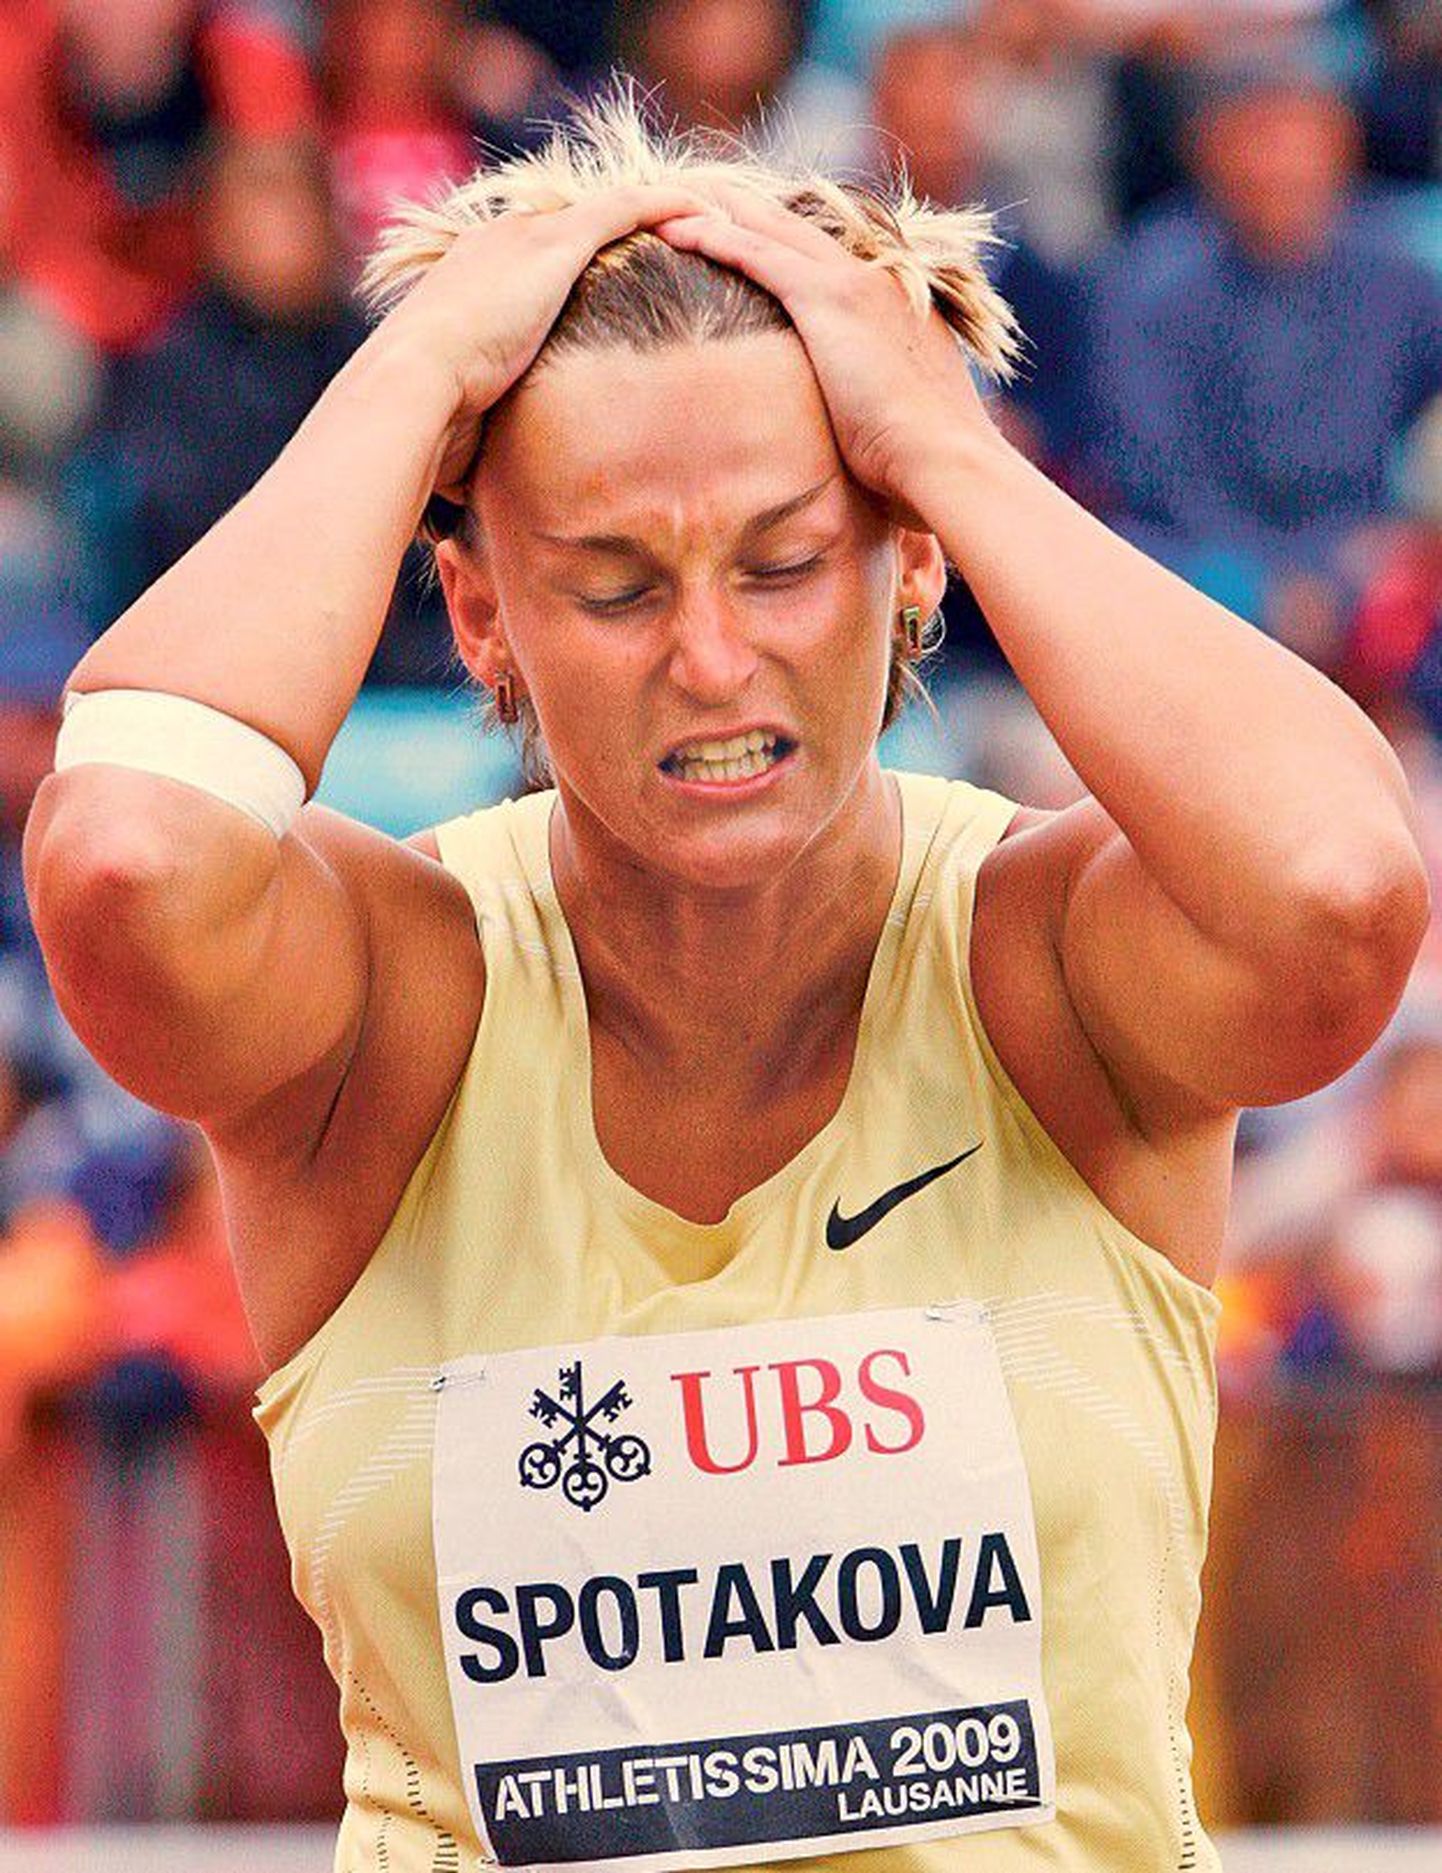 Odaviskaja Barbora Špotakova oli pärast võistlust tõeliselt pettunud.